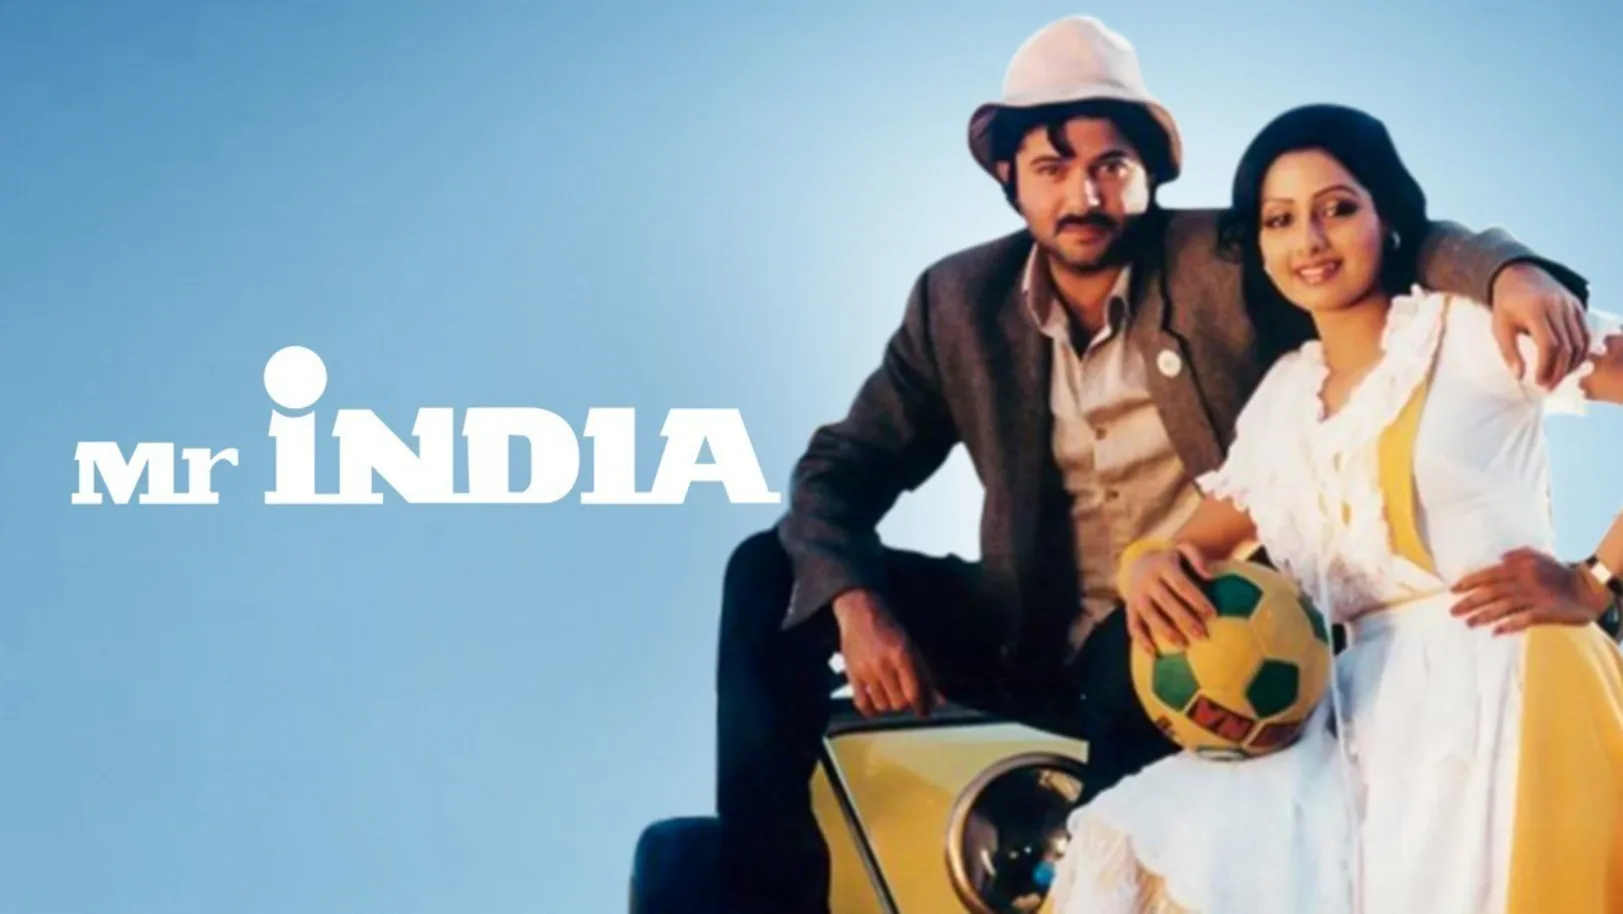 Mr. India Movie